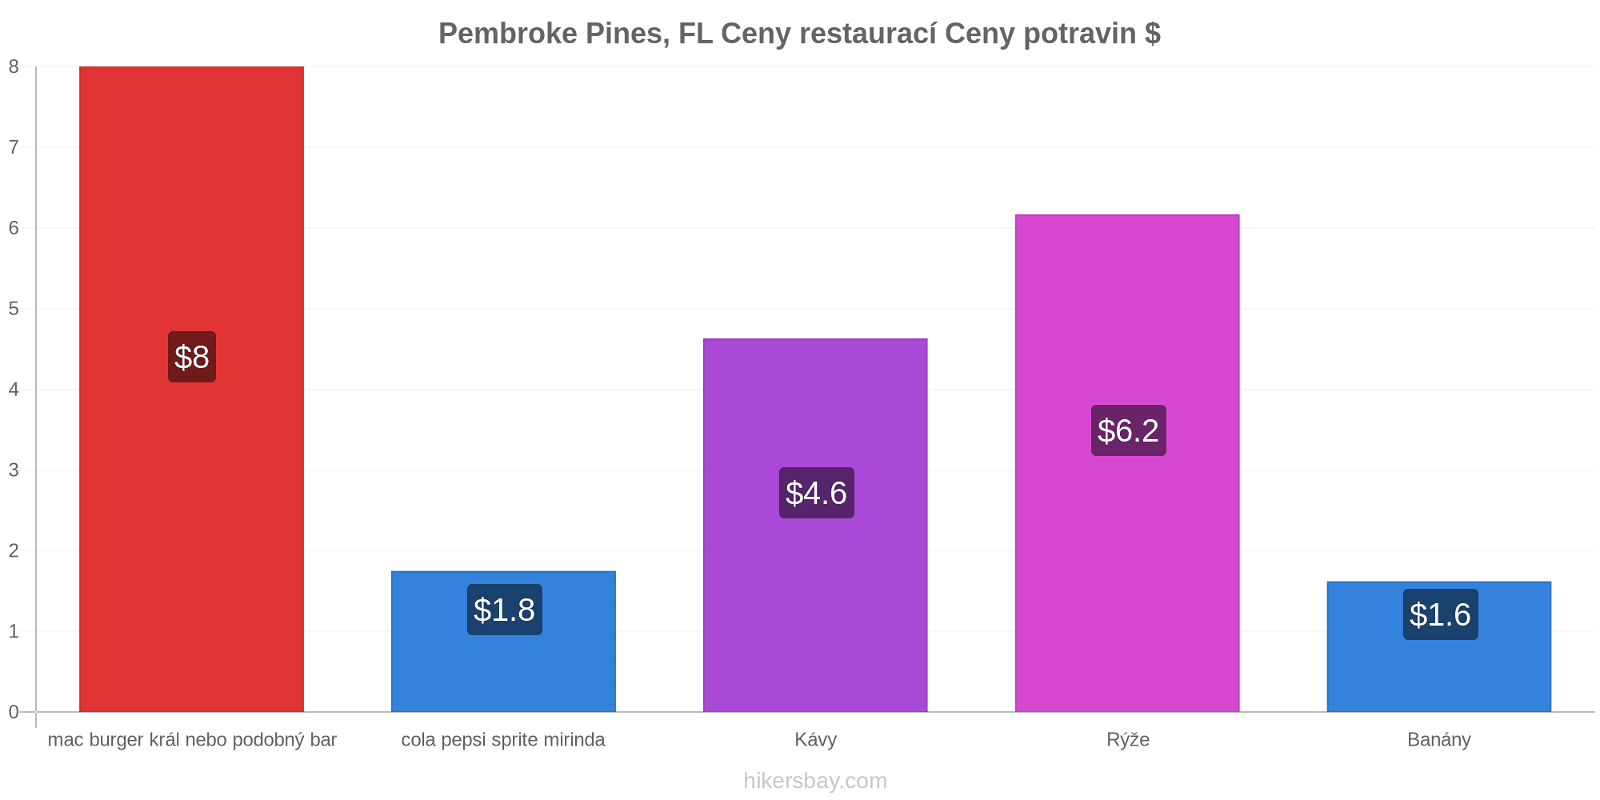 Pembroke Pines, FL změny cen hikersbay.com